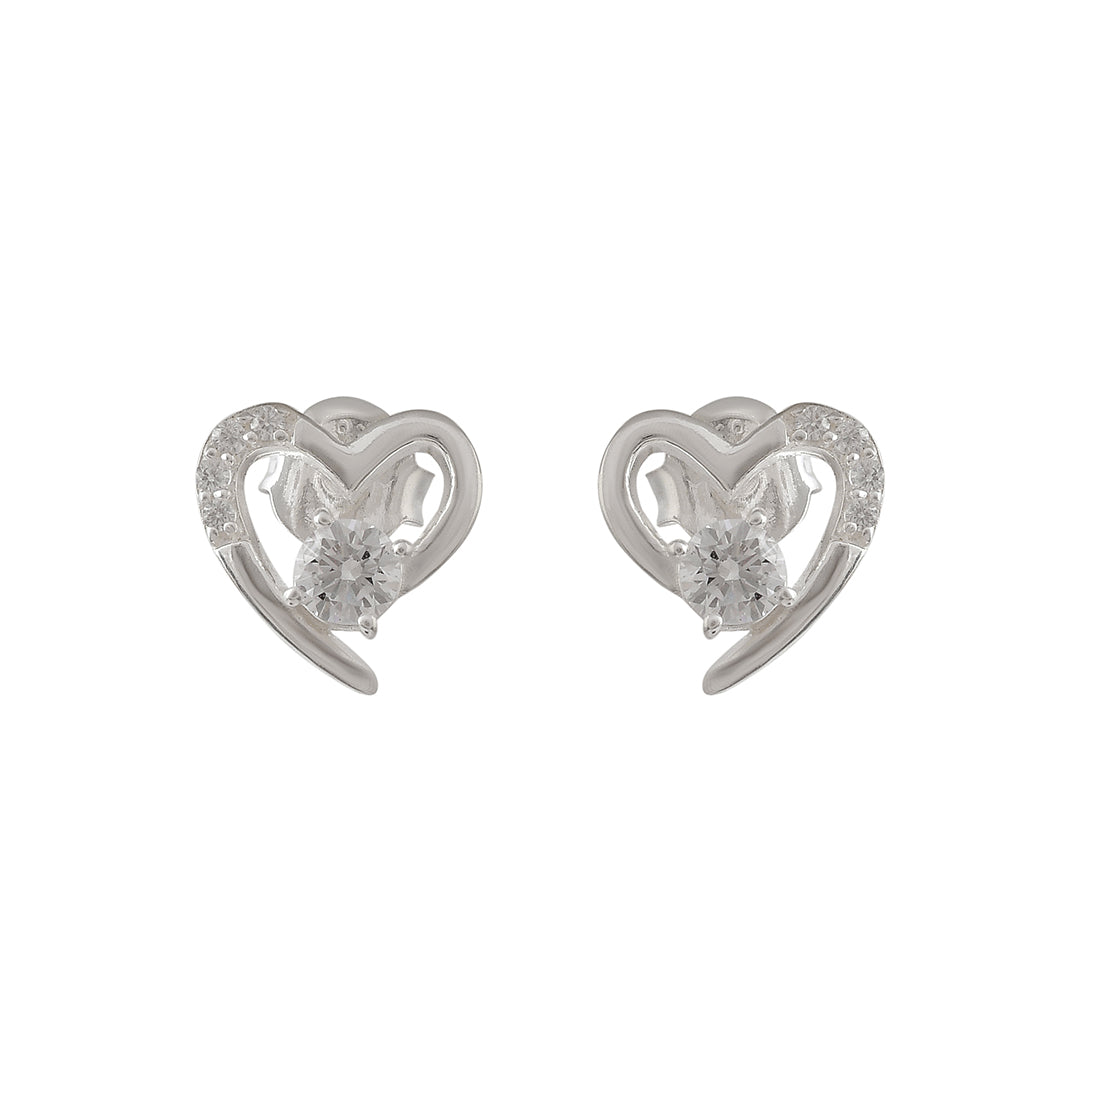 Adorable 925 Sterling Silver Heart-Shape Earrings